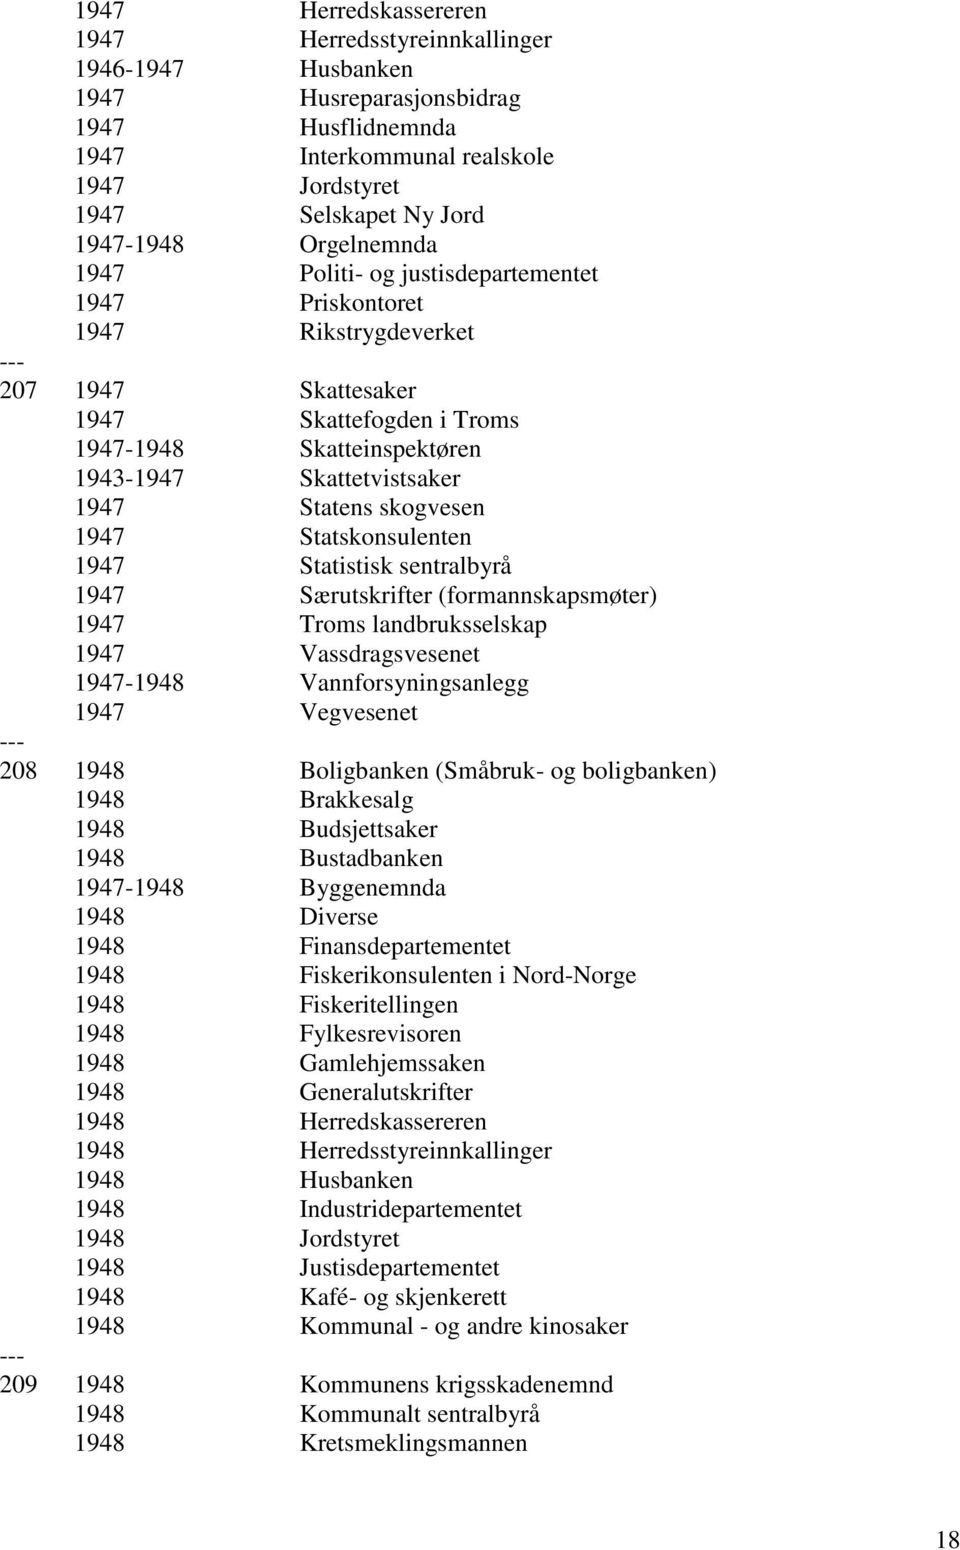 Statens skogvesen 1947 Statskonsulenten 1947 Statistisk sentralbyrå 1947 Særutskrifter (formannskapsmøter) 1947 Troms landbruksselskap 1947 Vassdragsvesenet 1947-1948 Vannforsyningsanlegg 1947